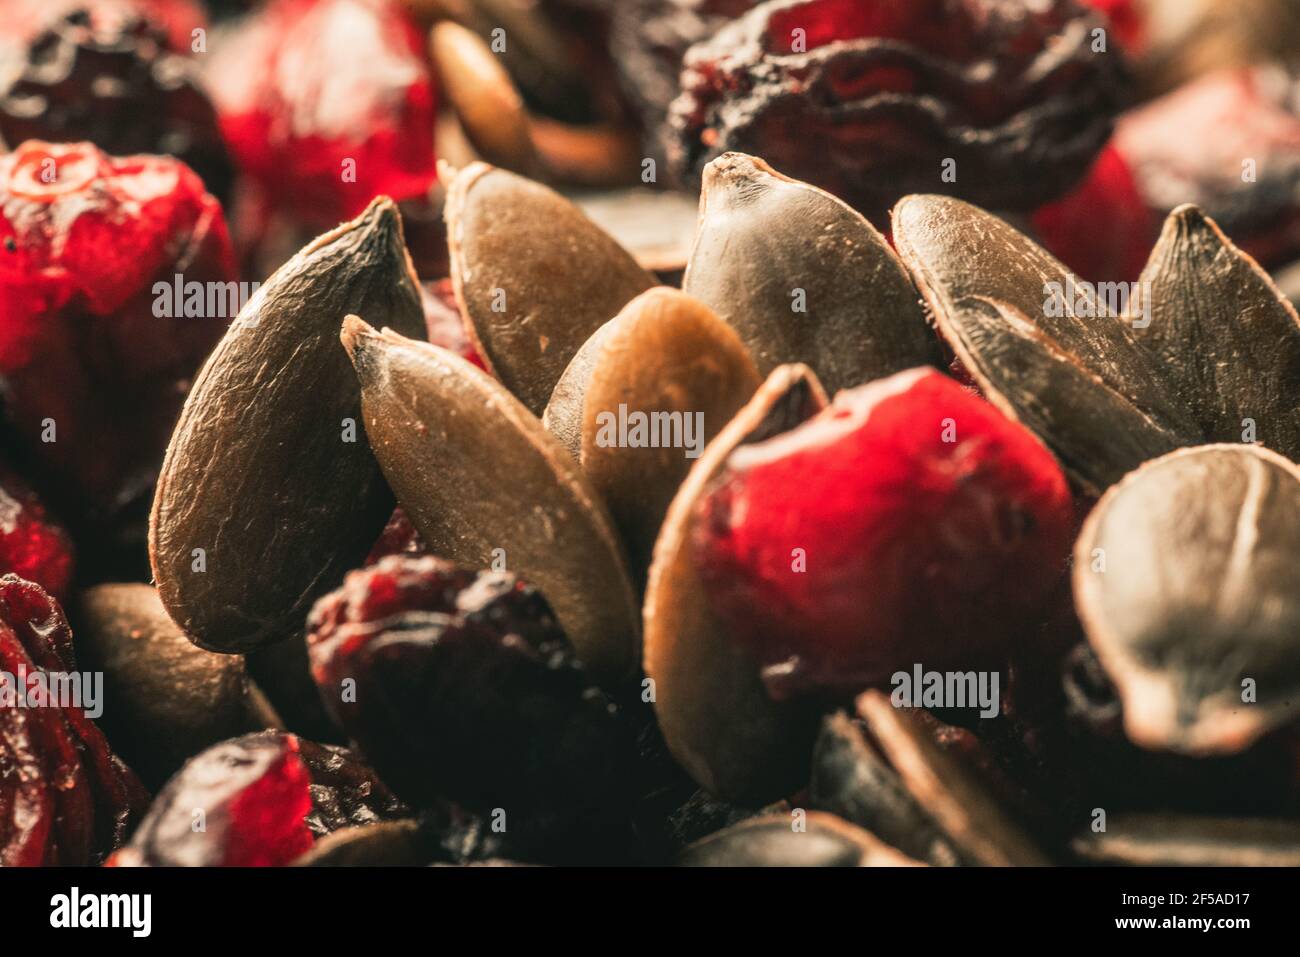 Fruits secs avec noix. Noix de cajou, noisettes, arachides, abricots séchés, viburnum, raisins secs. Banque D'Images